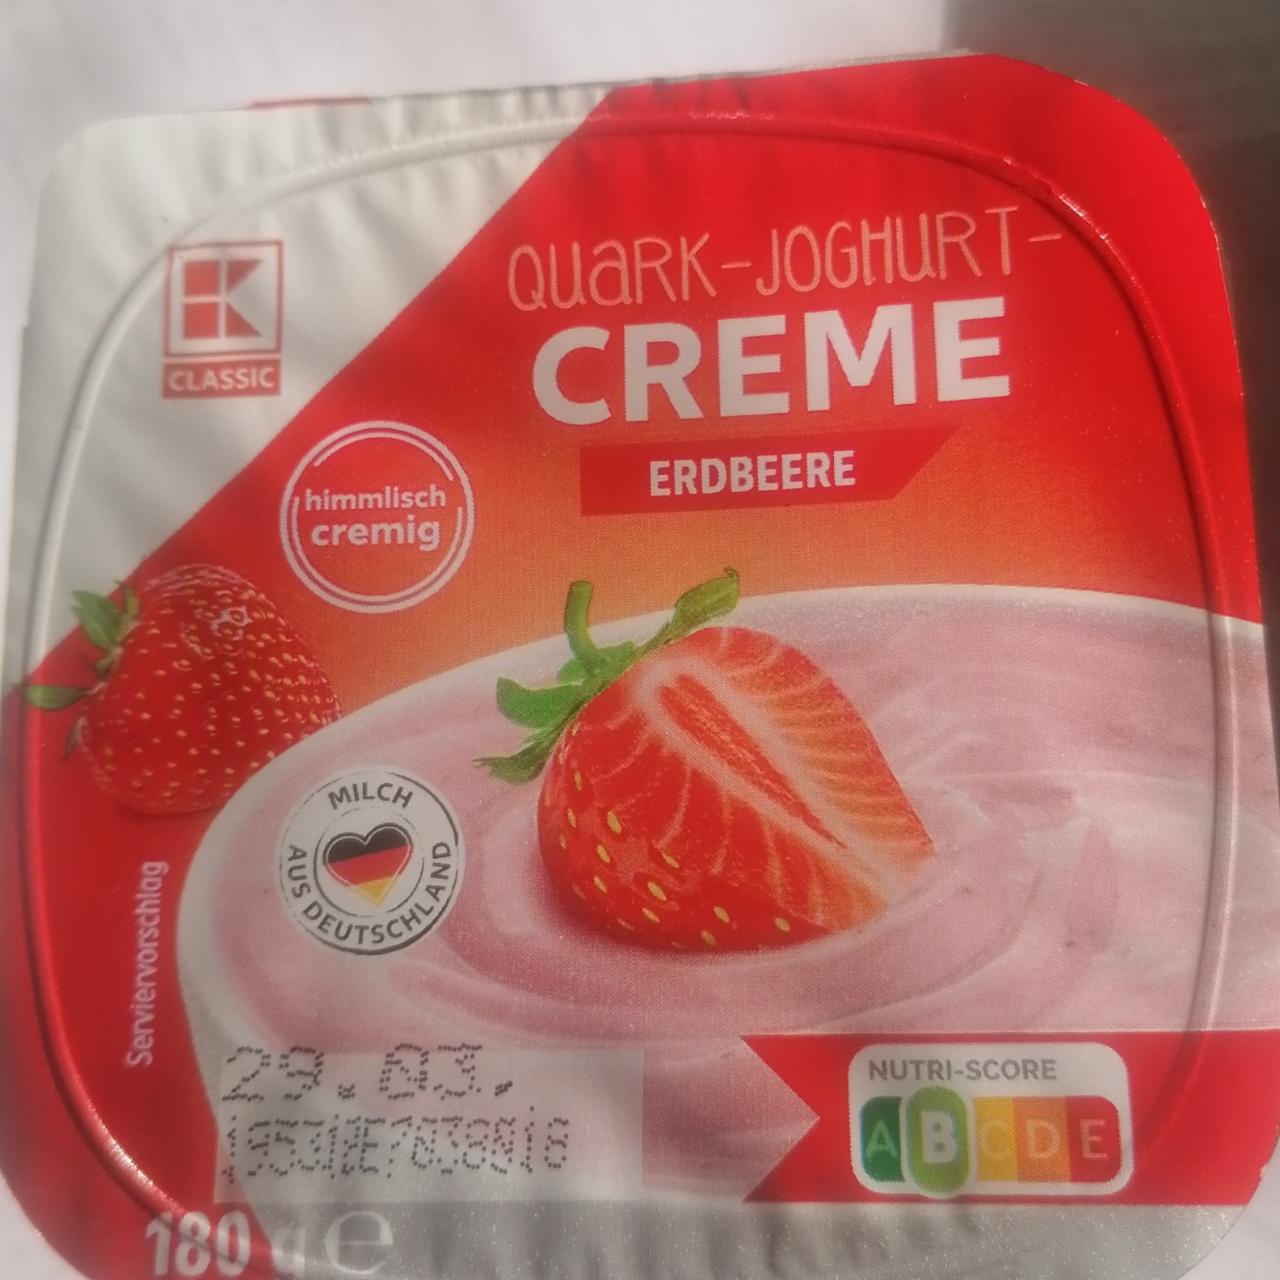 Fotografie - Quark-joghurt-creme Erdbeere K-Classic